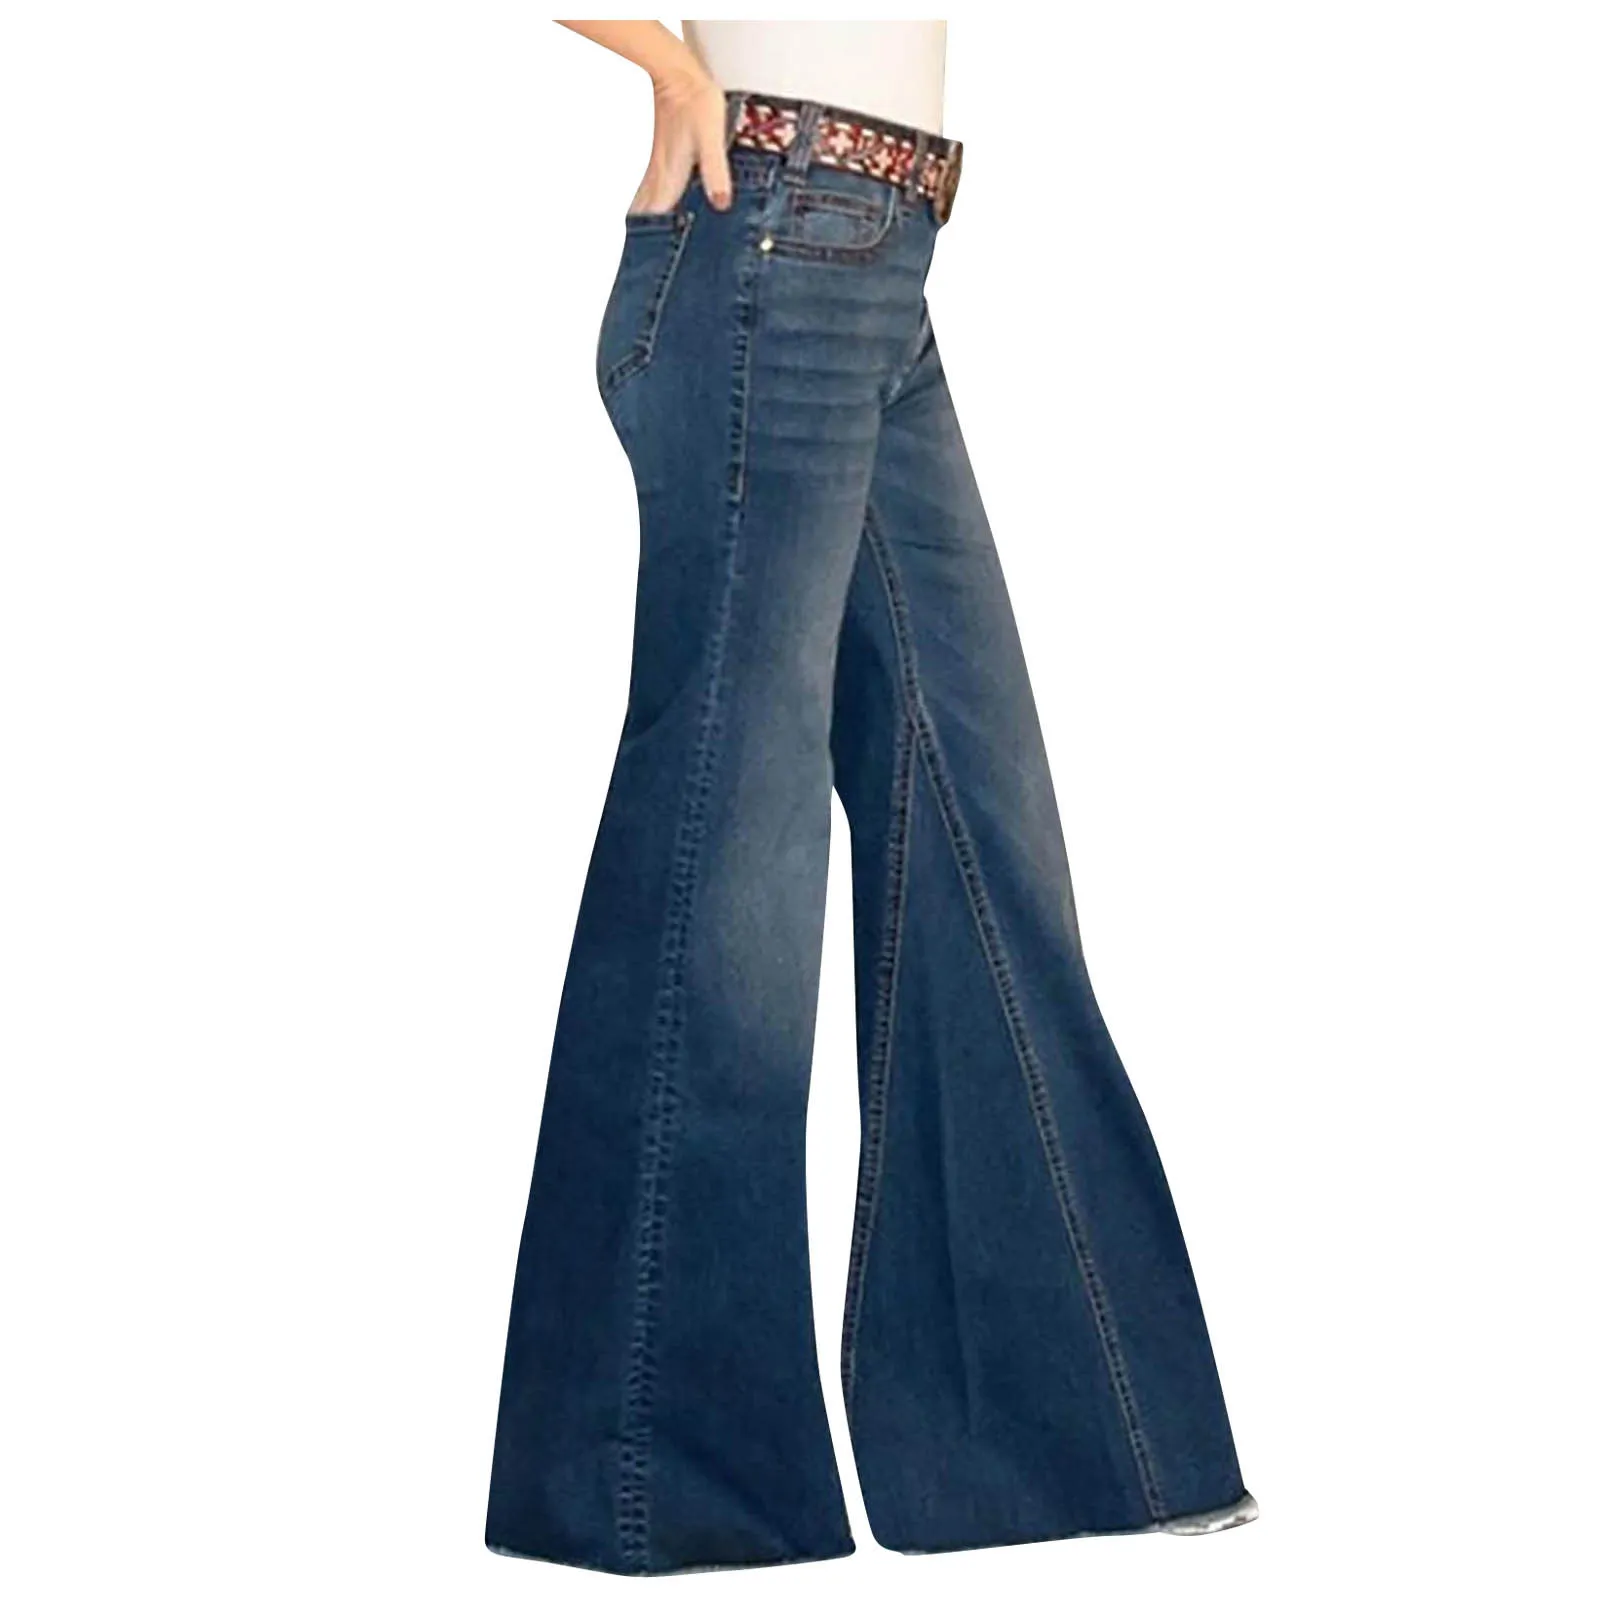 Mulheres Flare Jeans Mid Cintura Senhoras Cor Jean Feminino Feminino Estiramento Slim Sino Calças Comprimento Jeans 202 Skinny Ropa de Mujer